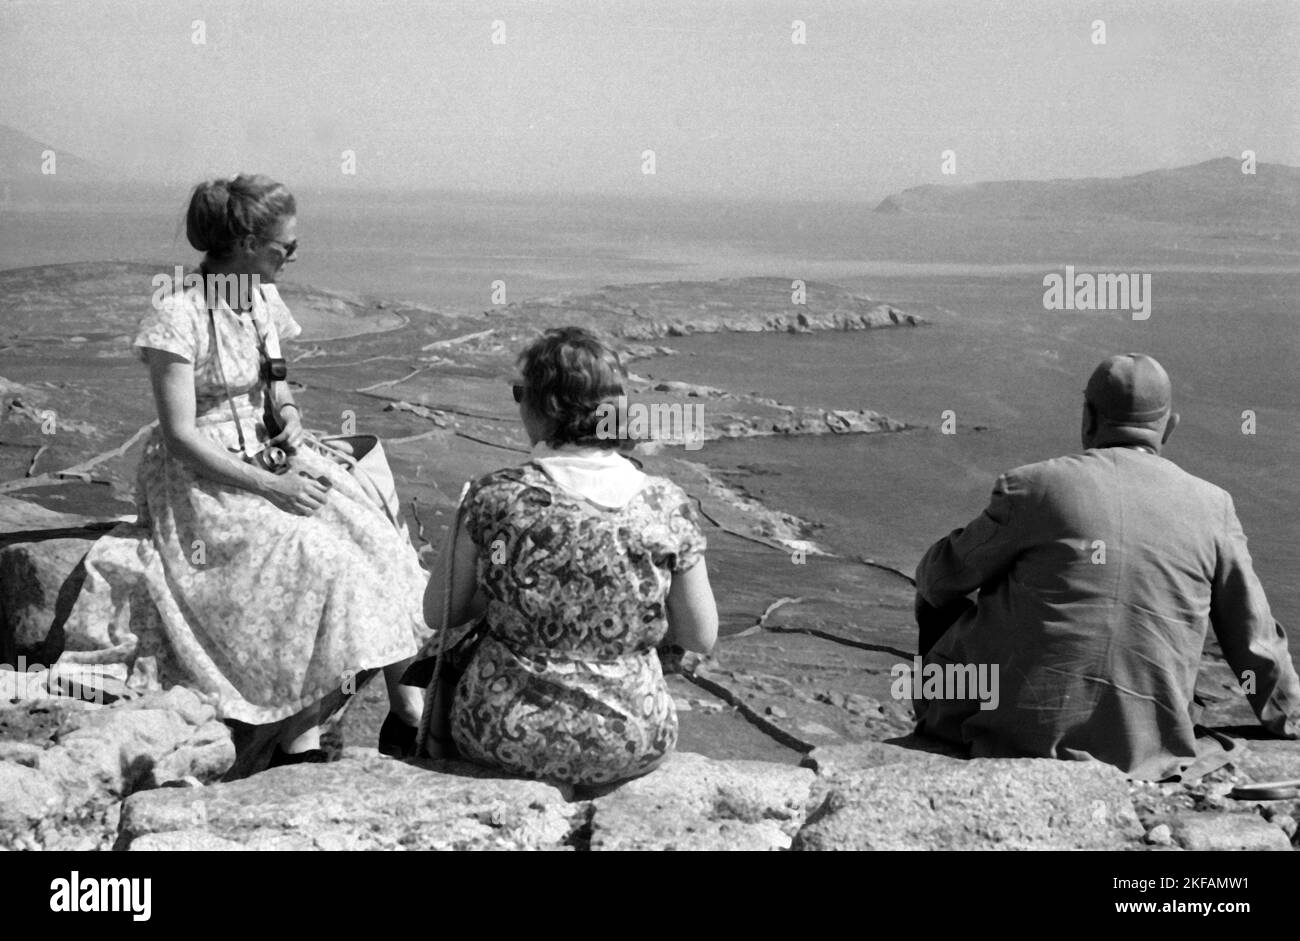 Griechenland - Ein Mann und zwei Frauen sitzen auf einer Klippe auf der Insel Delos, Kykladen, und blicken auf die Bucht, 1954. Greece - A man and two women sitting on a cliff at the island of Delos, Cyclades, have a look to the bay, 1954. Stock Photo